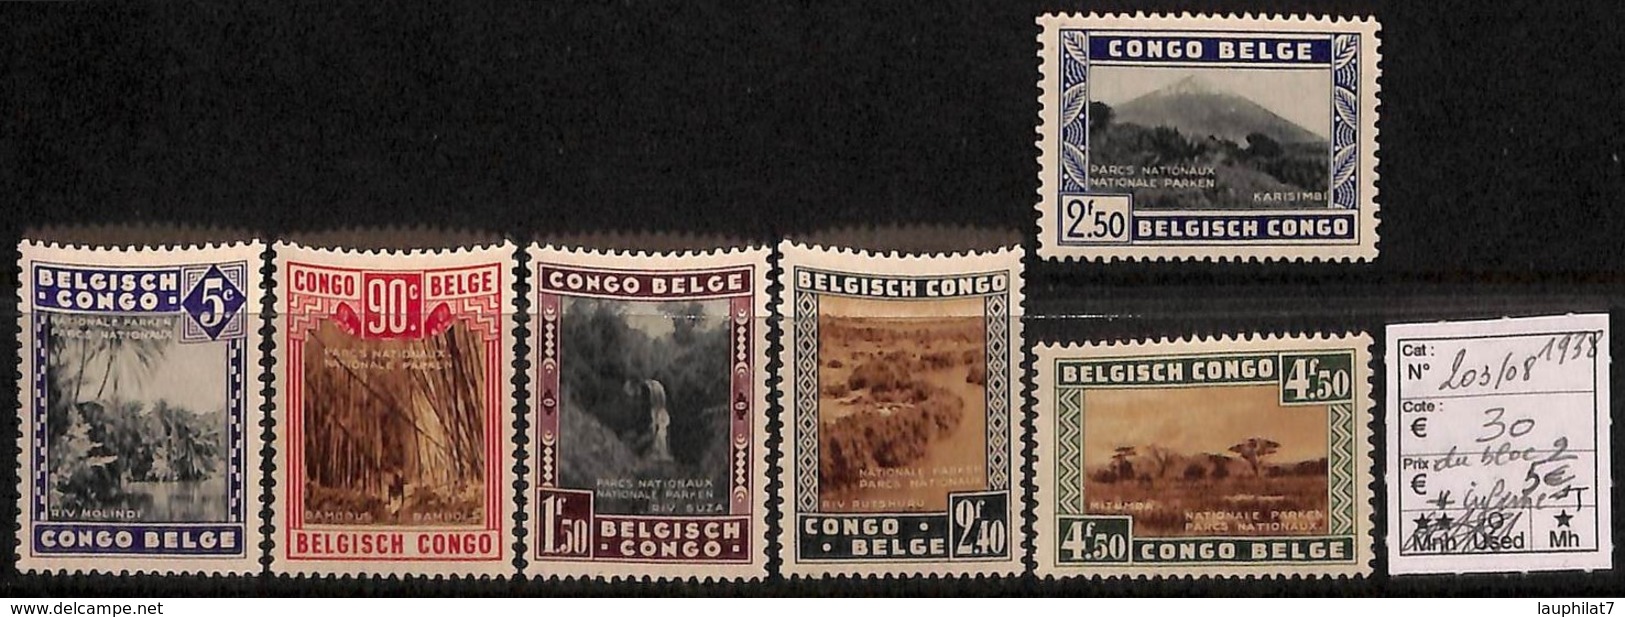 [814487]TB//*/Mh-c:30e-Congo Belge        1938 - N° 203/08, Parcs Nationaux, Paysages, SC, */mh Légère - Unused Stamps